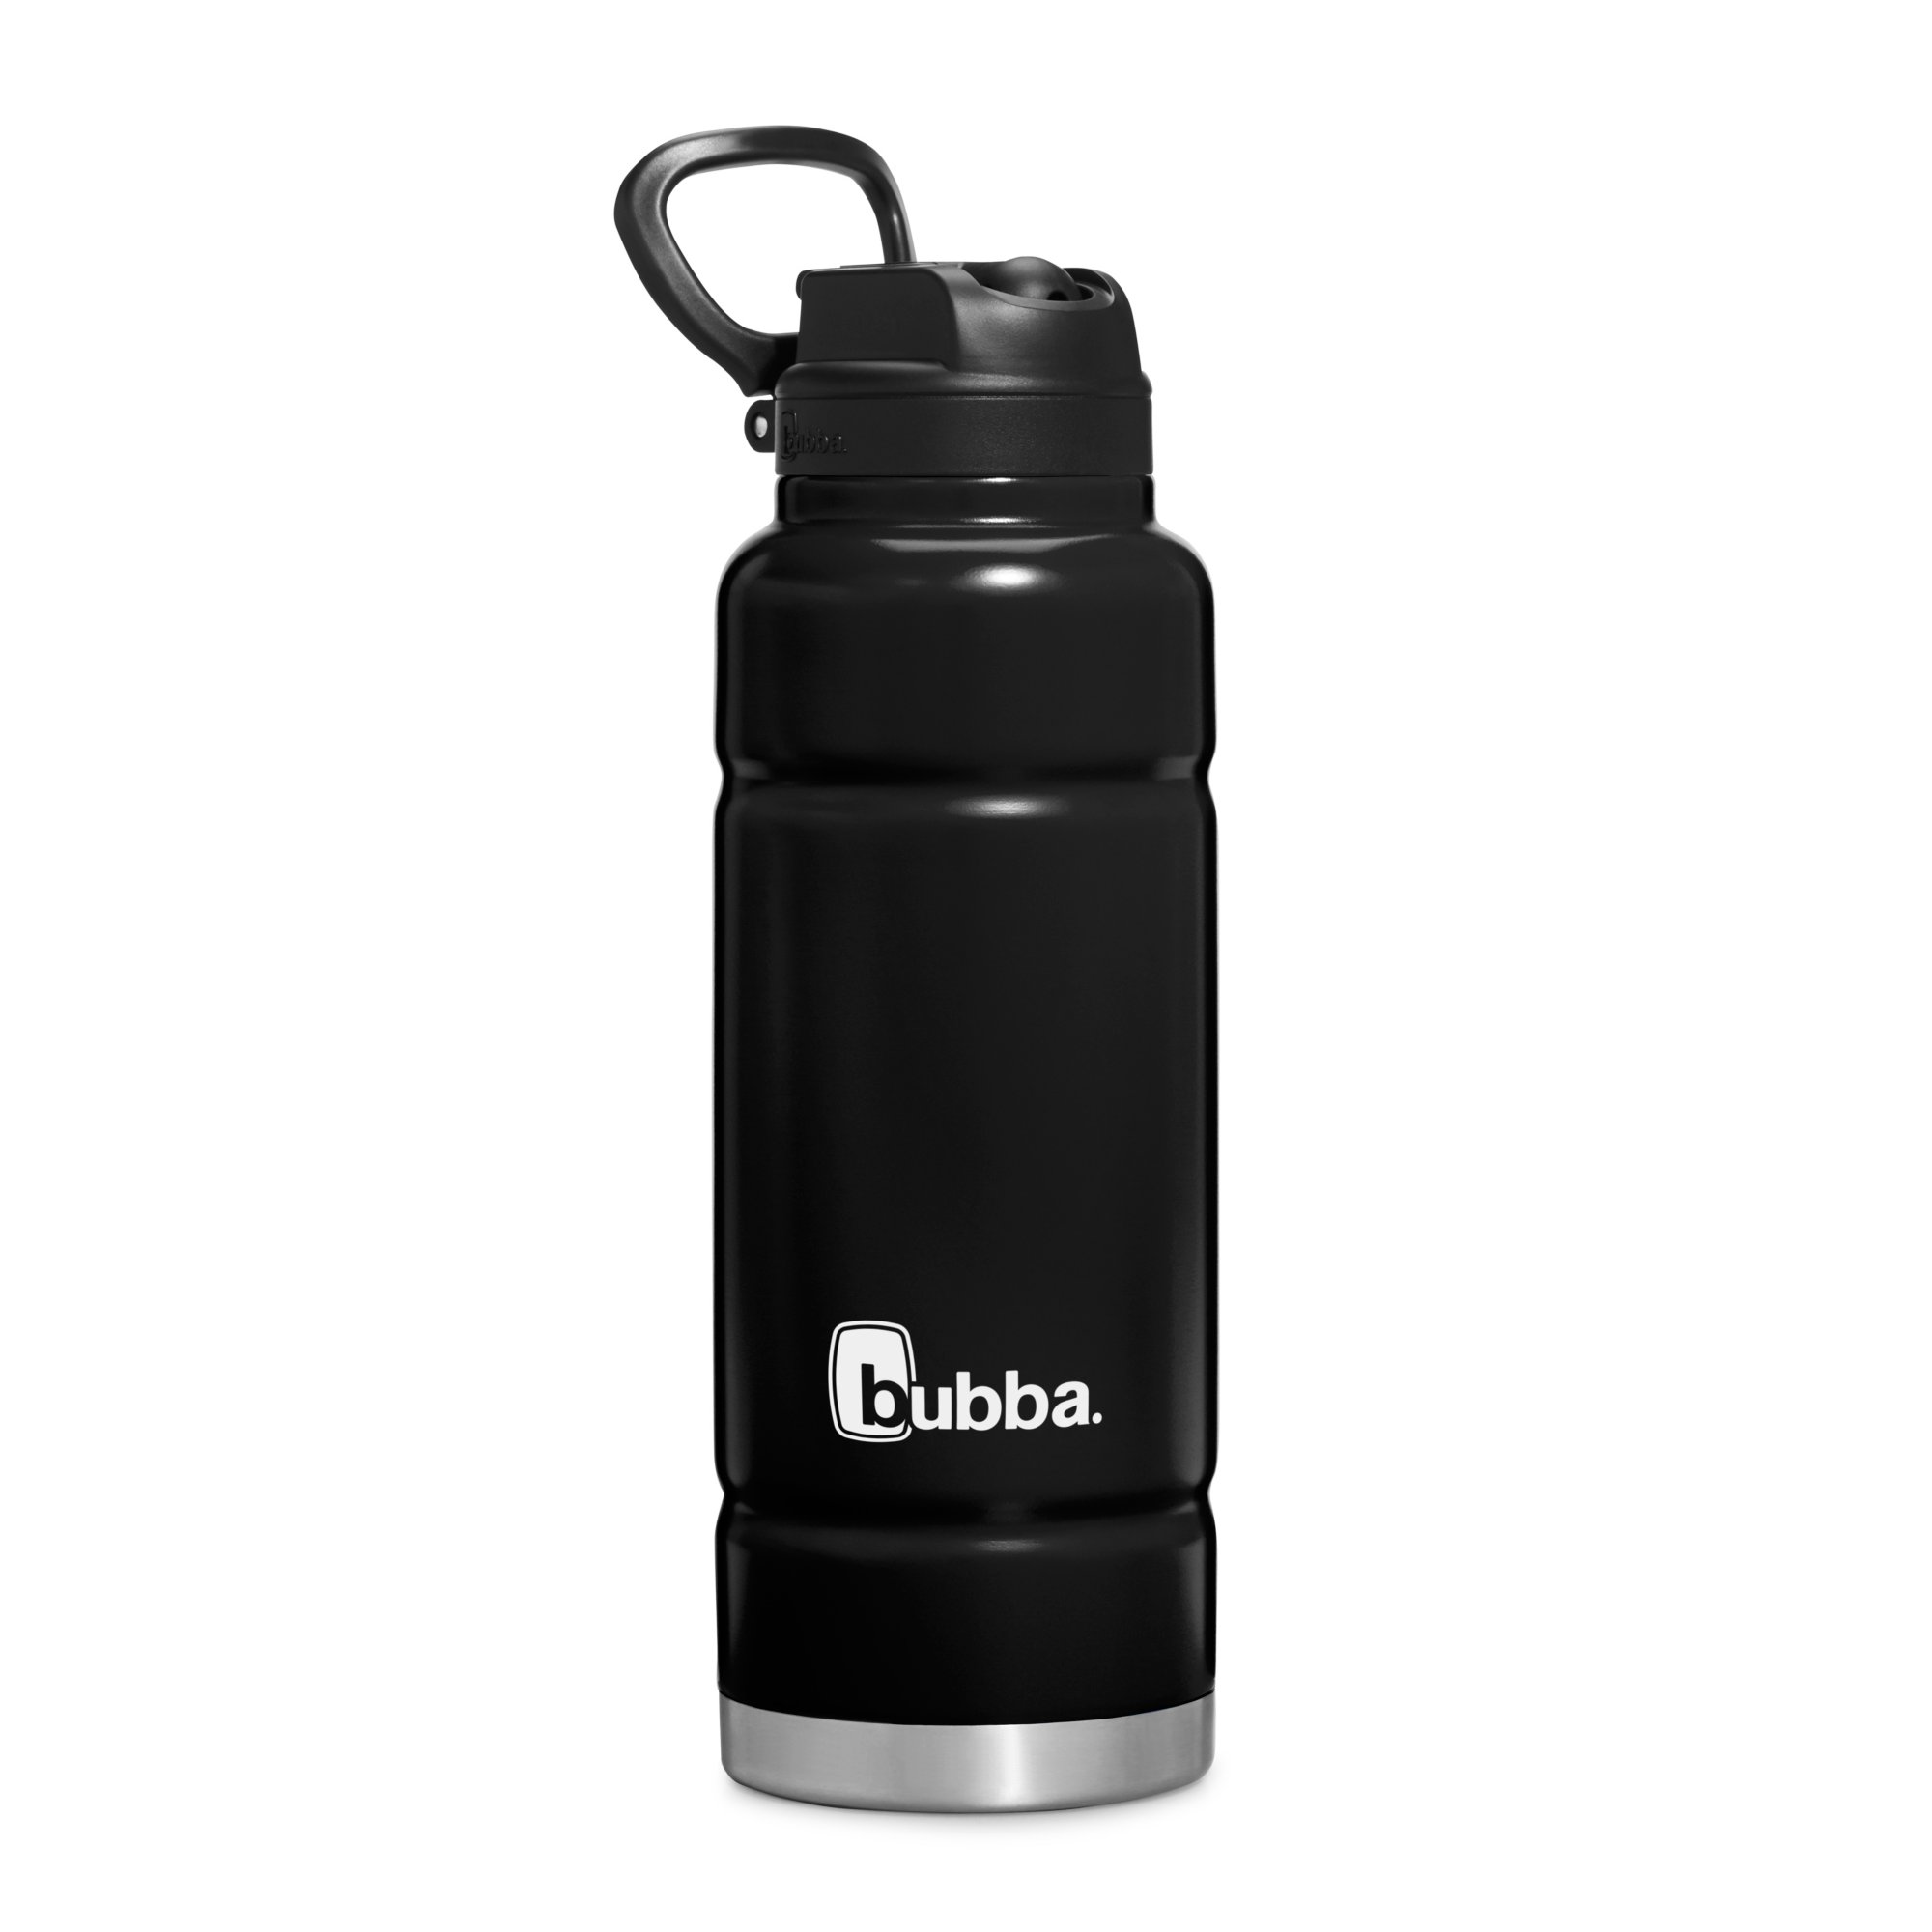 Bubba Trailblazer Stainless Steel Water Bottle Push Button Lid Rubberized  Black